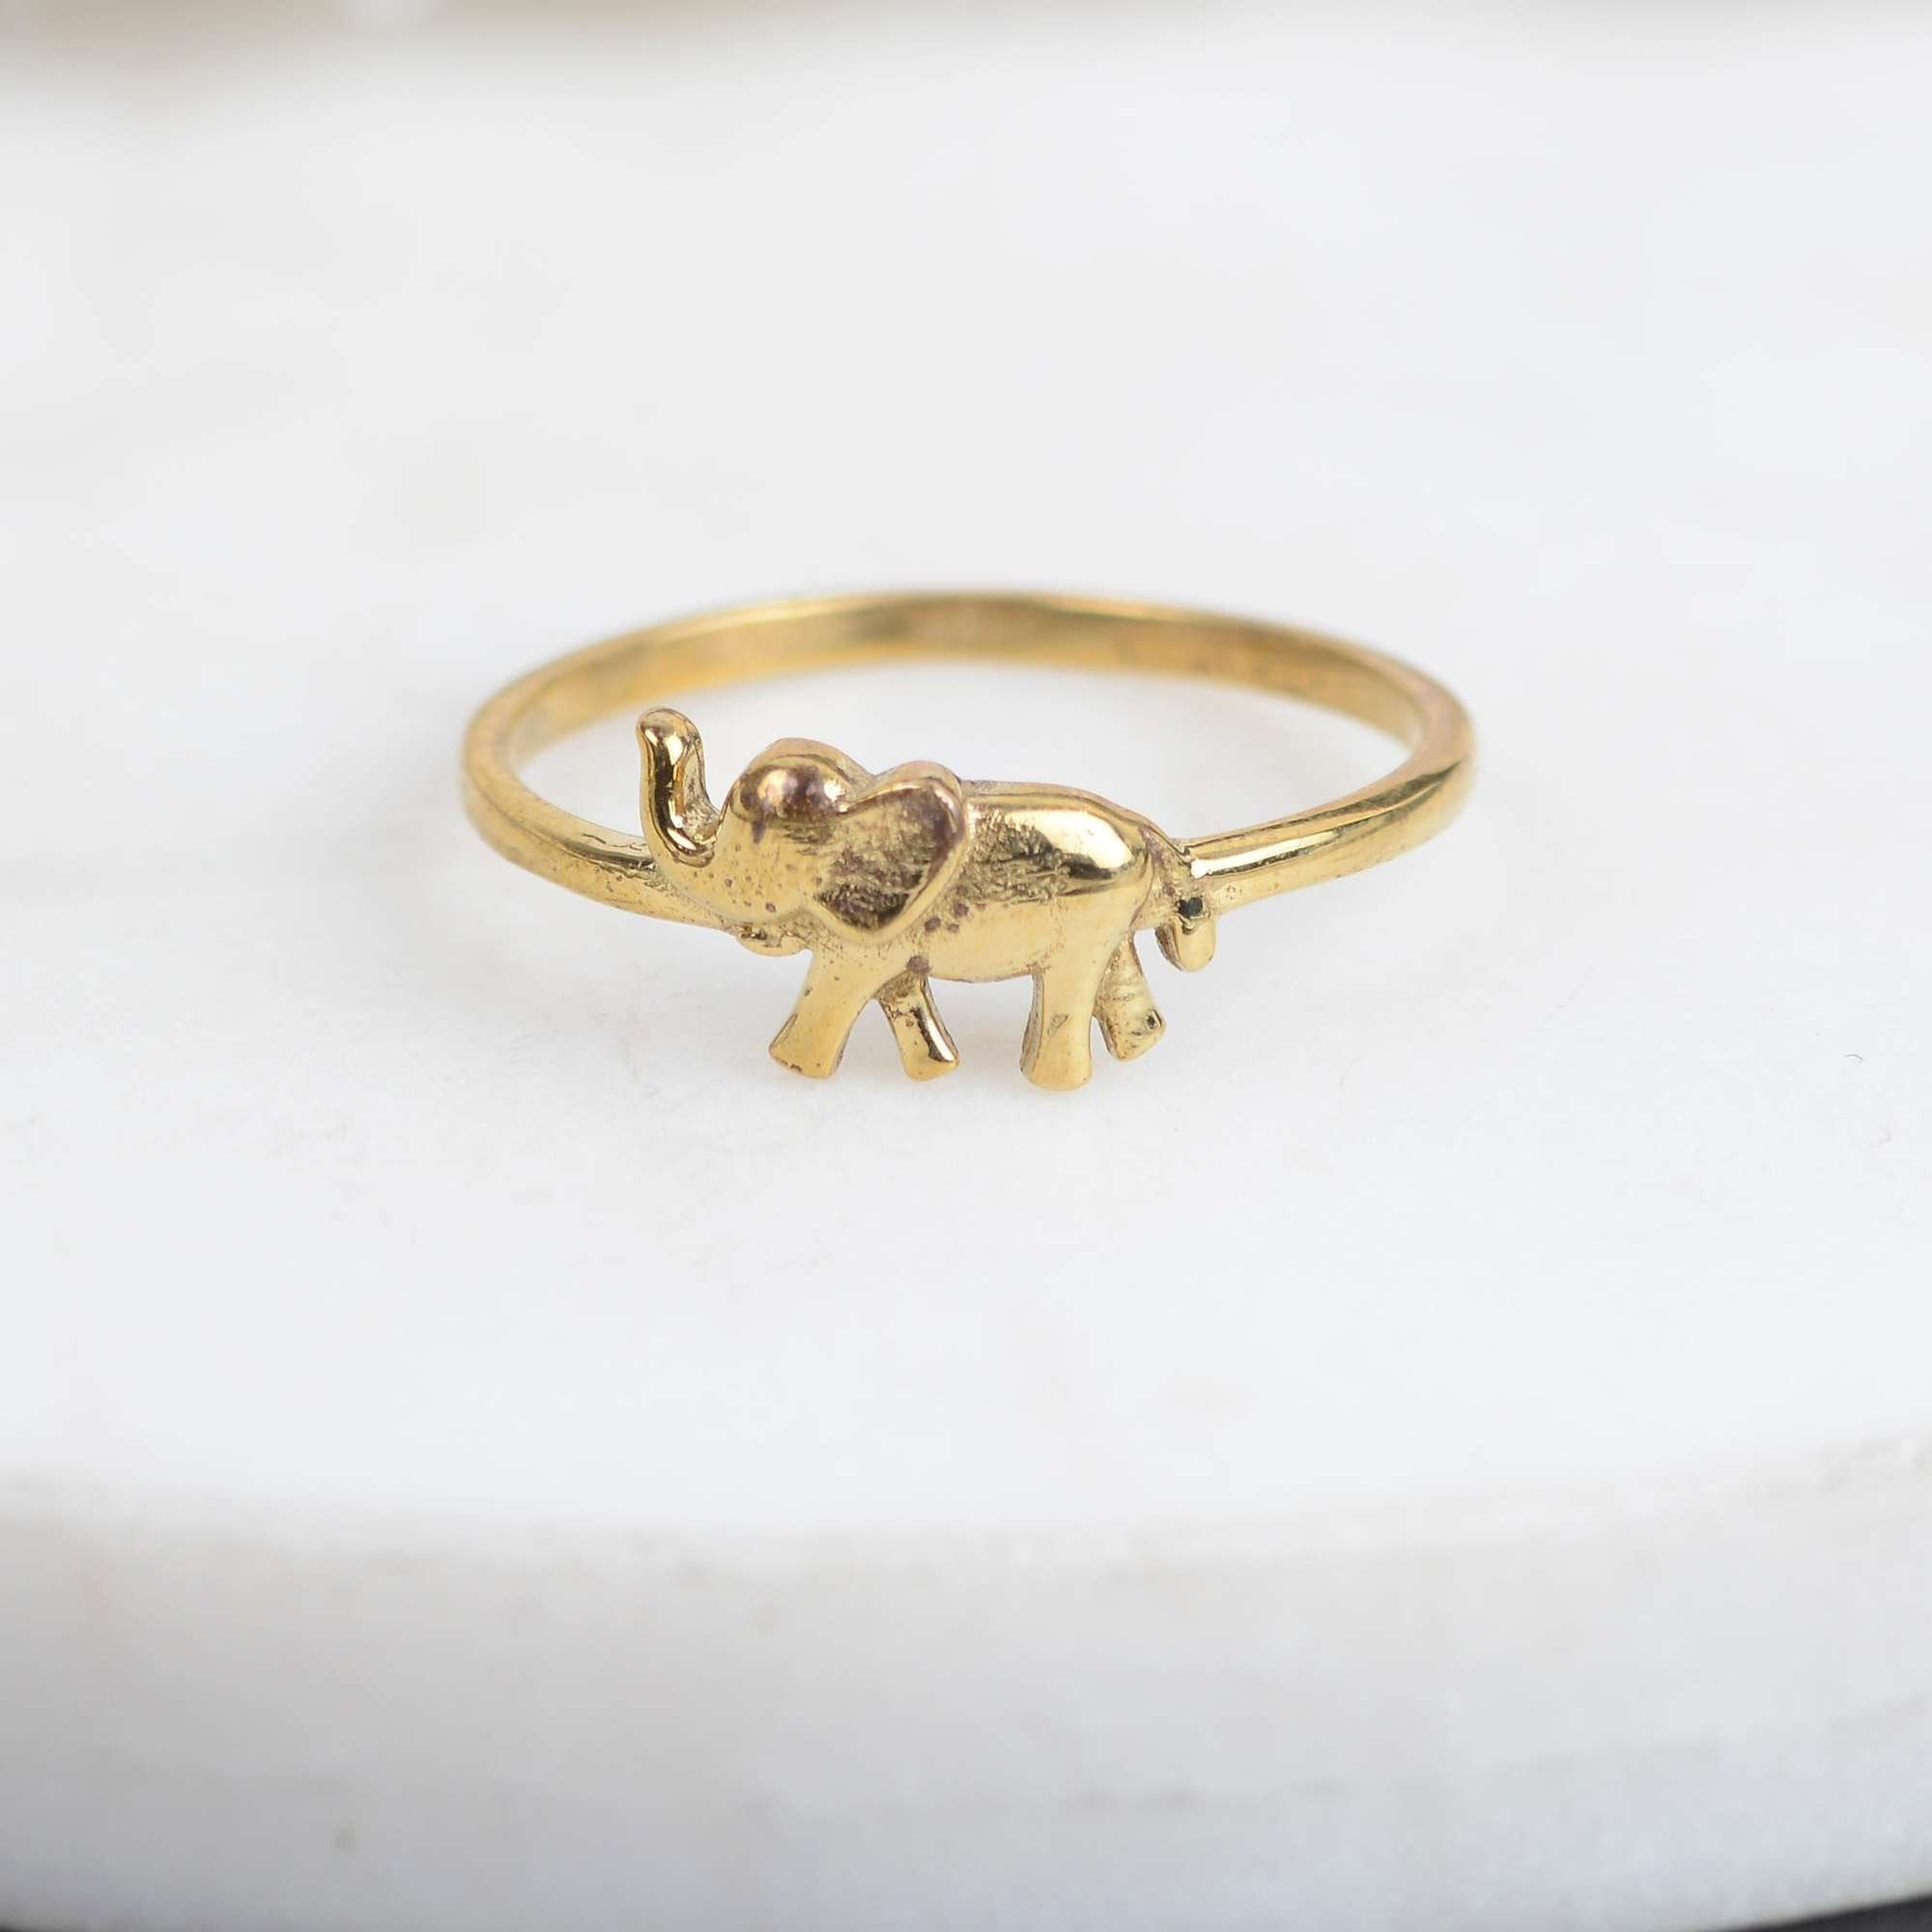 1 GRAM GOLD FORMING PINK DIAMOND RING FOR MEN DESIGN A-32 – Radhe Imitation